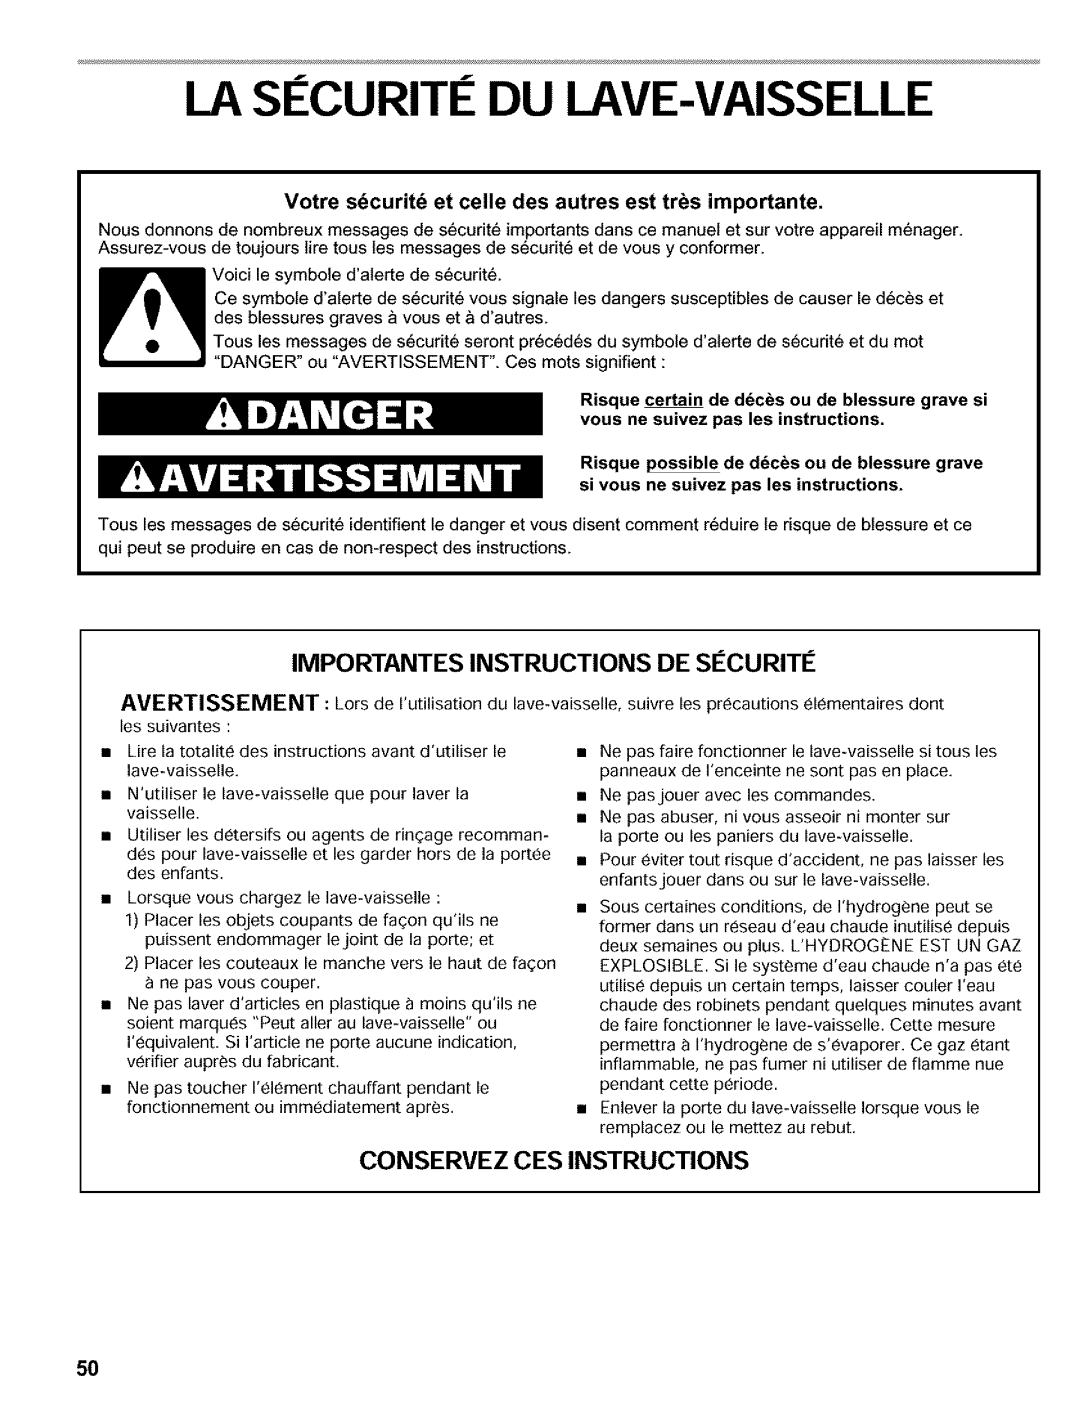 Kenmore 665.16817 manual La Securite Du Lave-Vaisselle, Conservez Ces Instructions, Importantes Instructions De S¢Curit¢ 